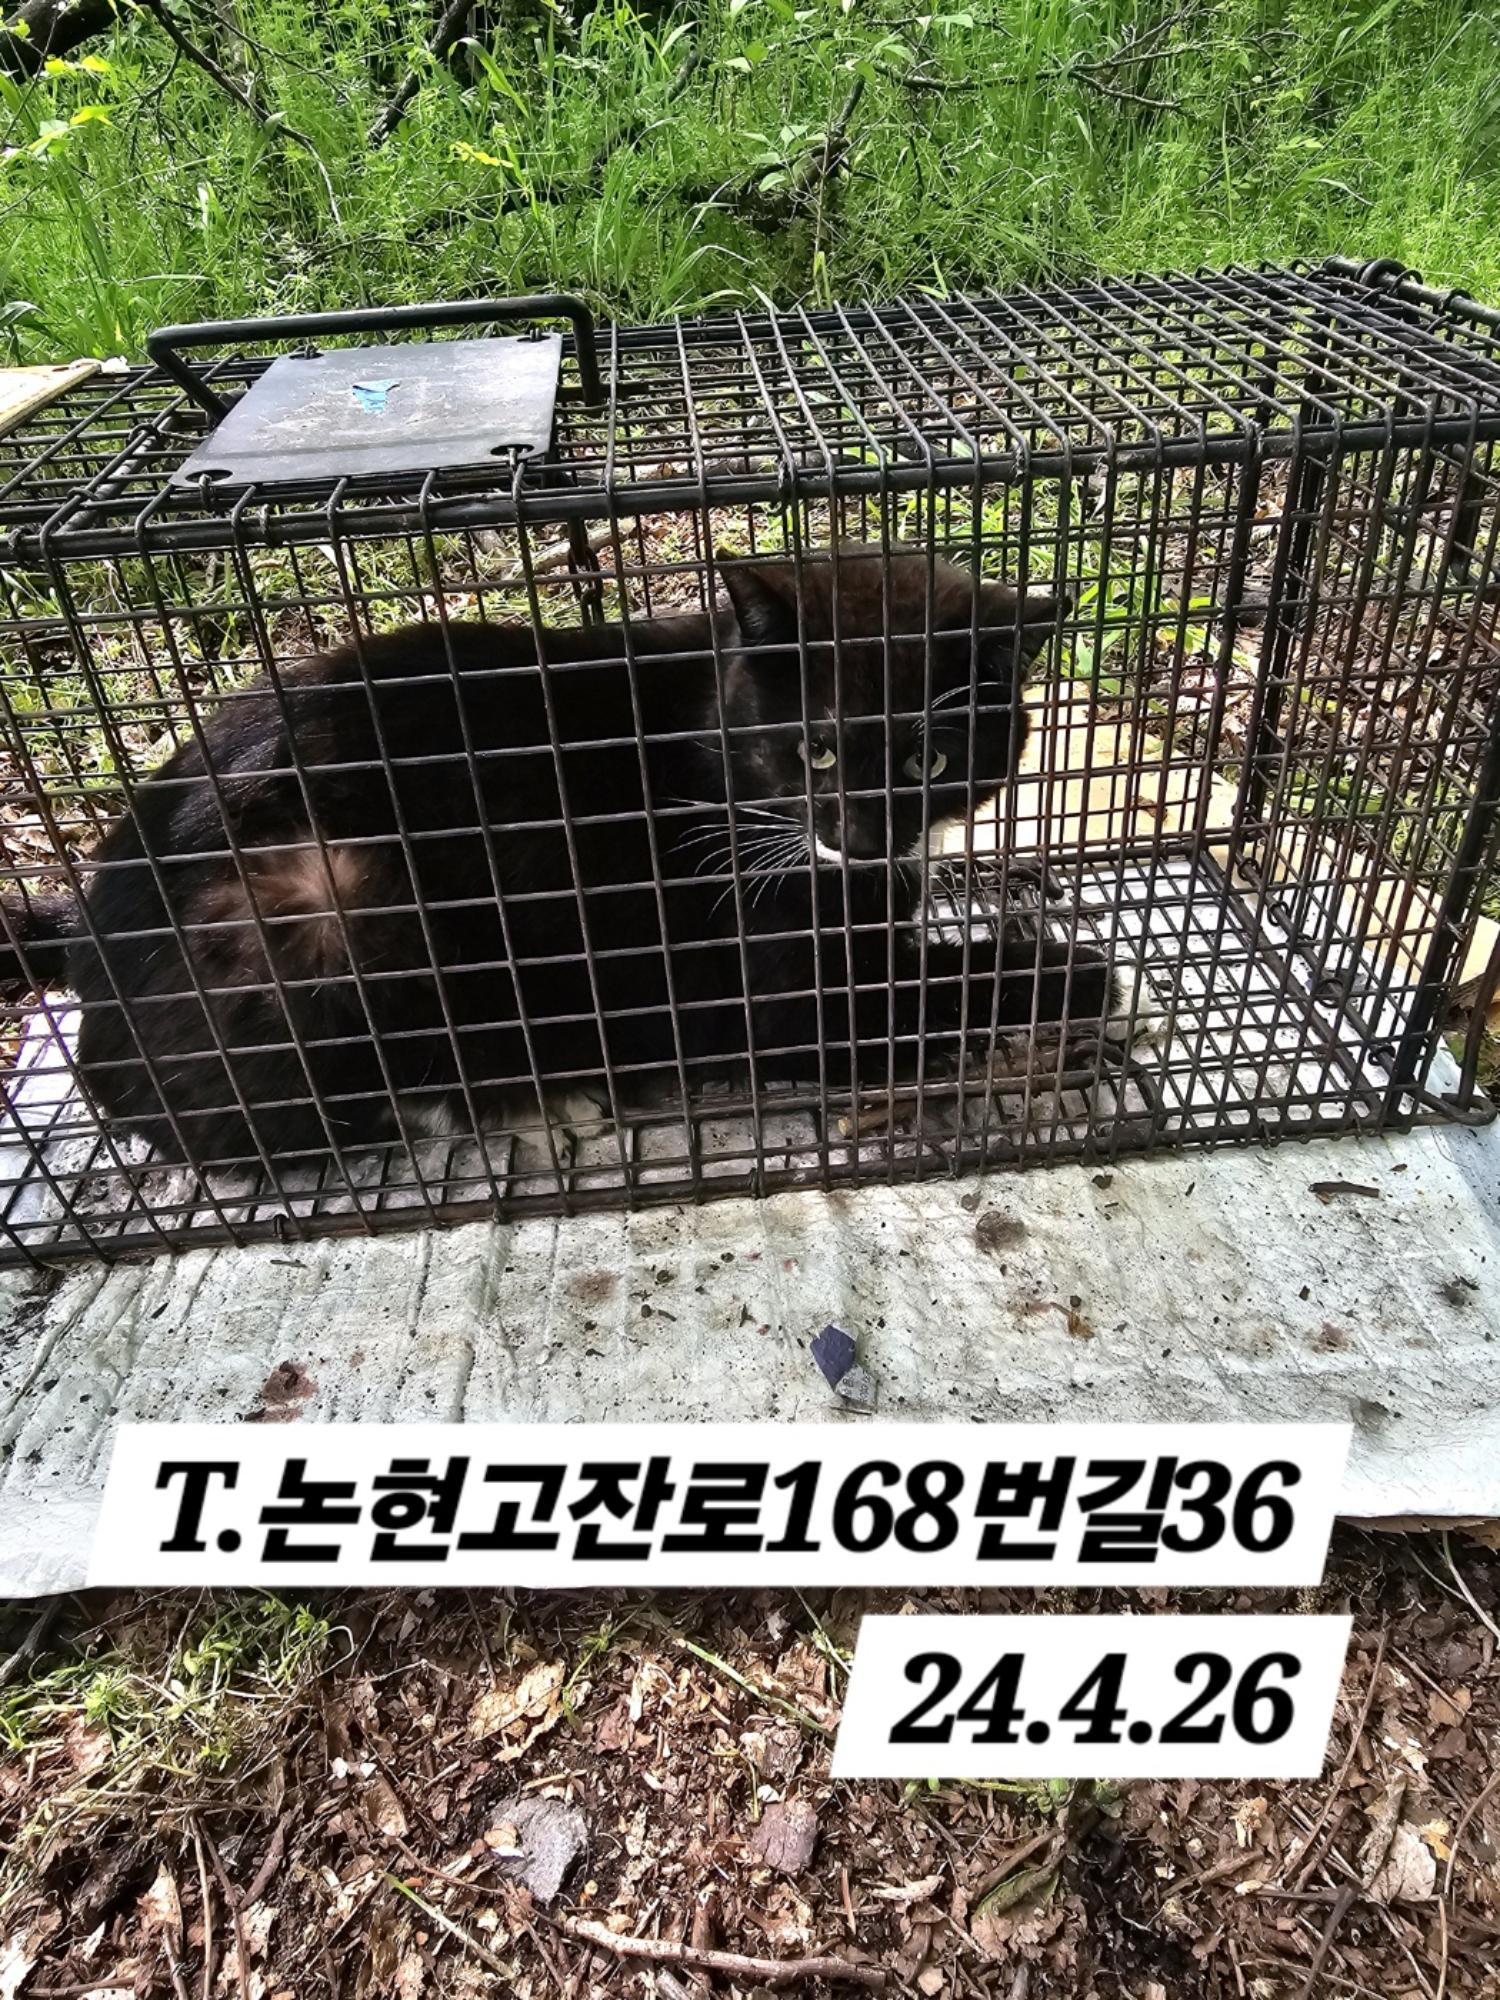 보호중동물사진 공고번호-인천-남동-2024-00240